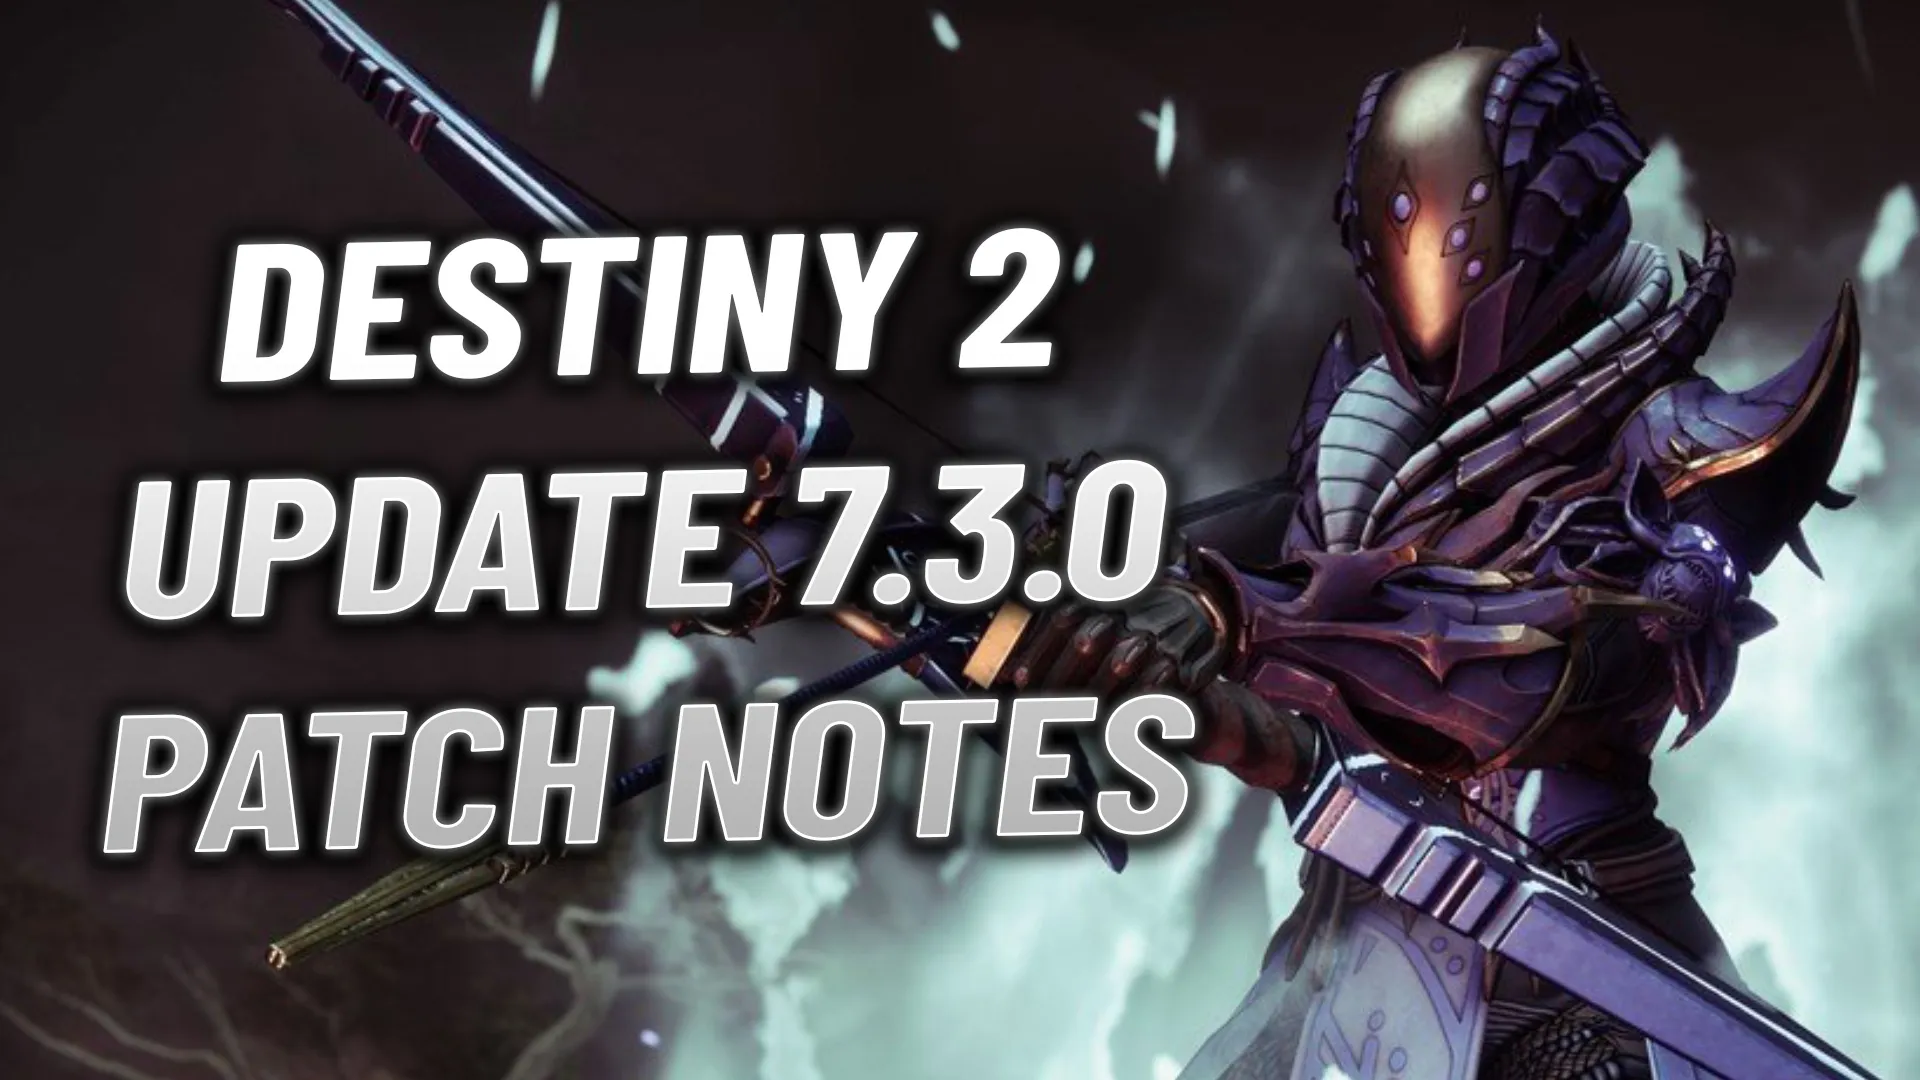 Destiny 2 6.3.0 Update Patch Notes REVEALED